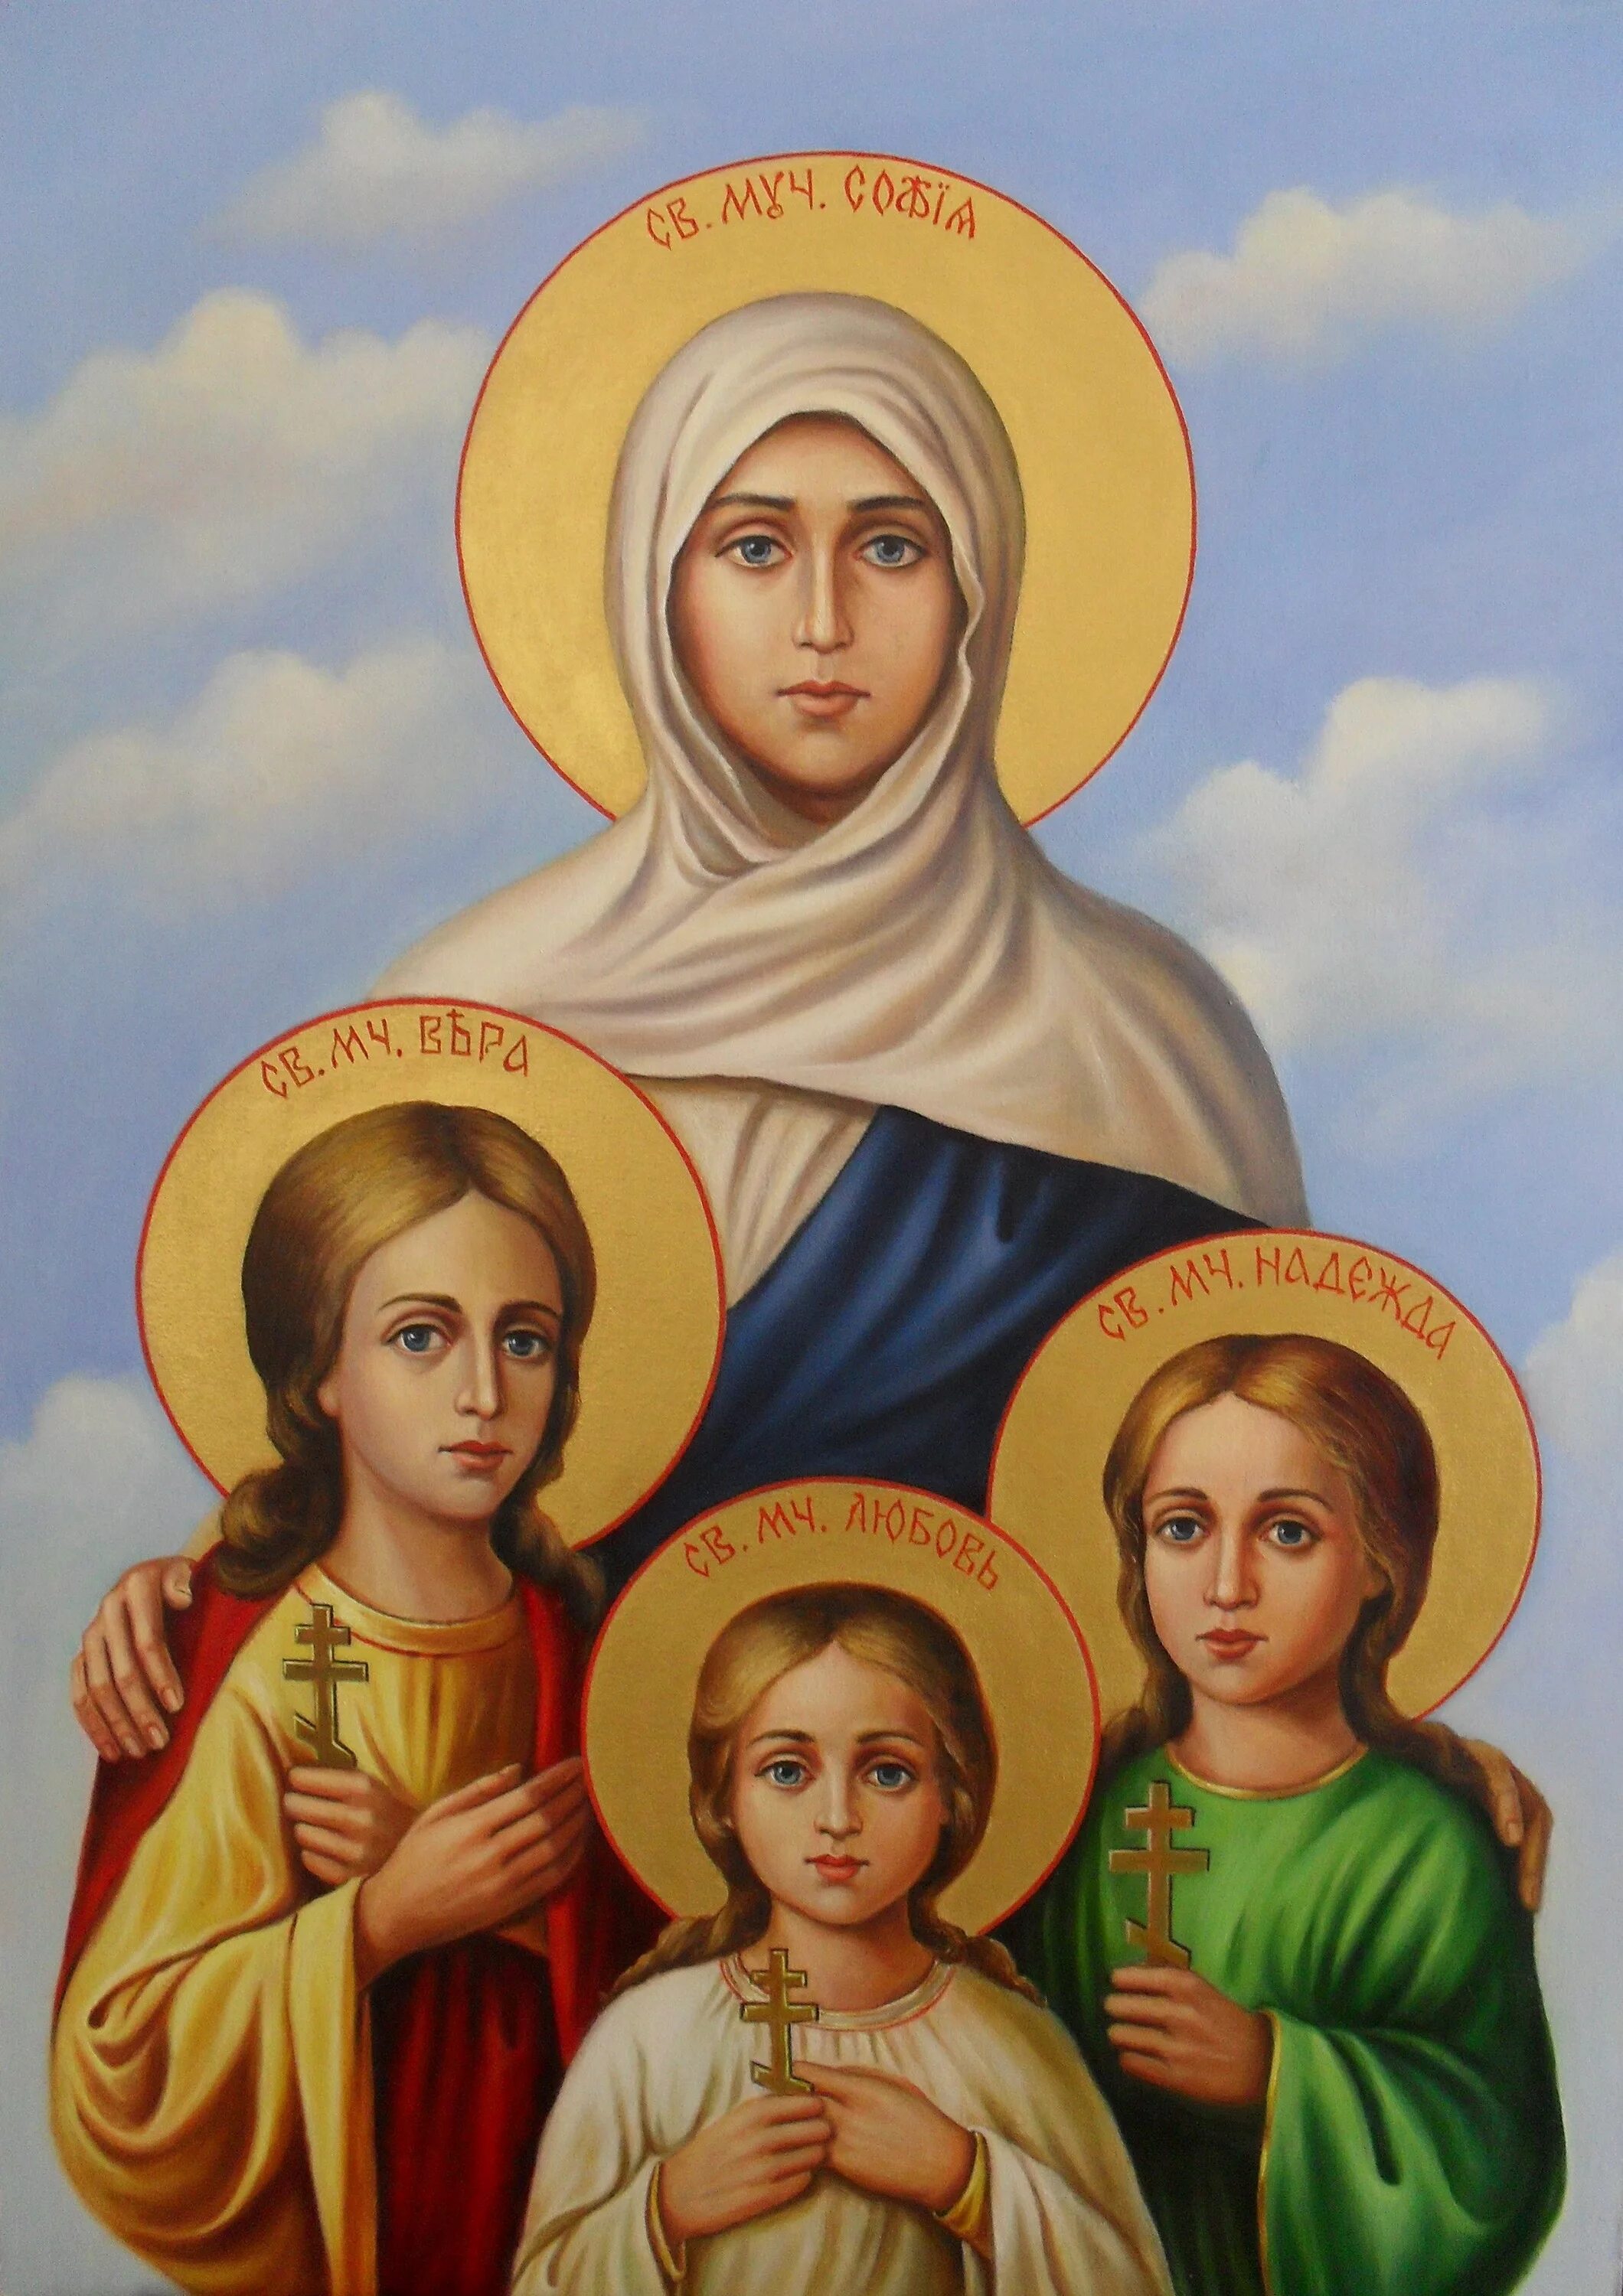 Мати святая. Икона веры надежды Любови и матери Софии.